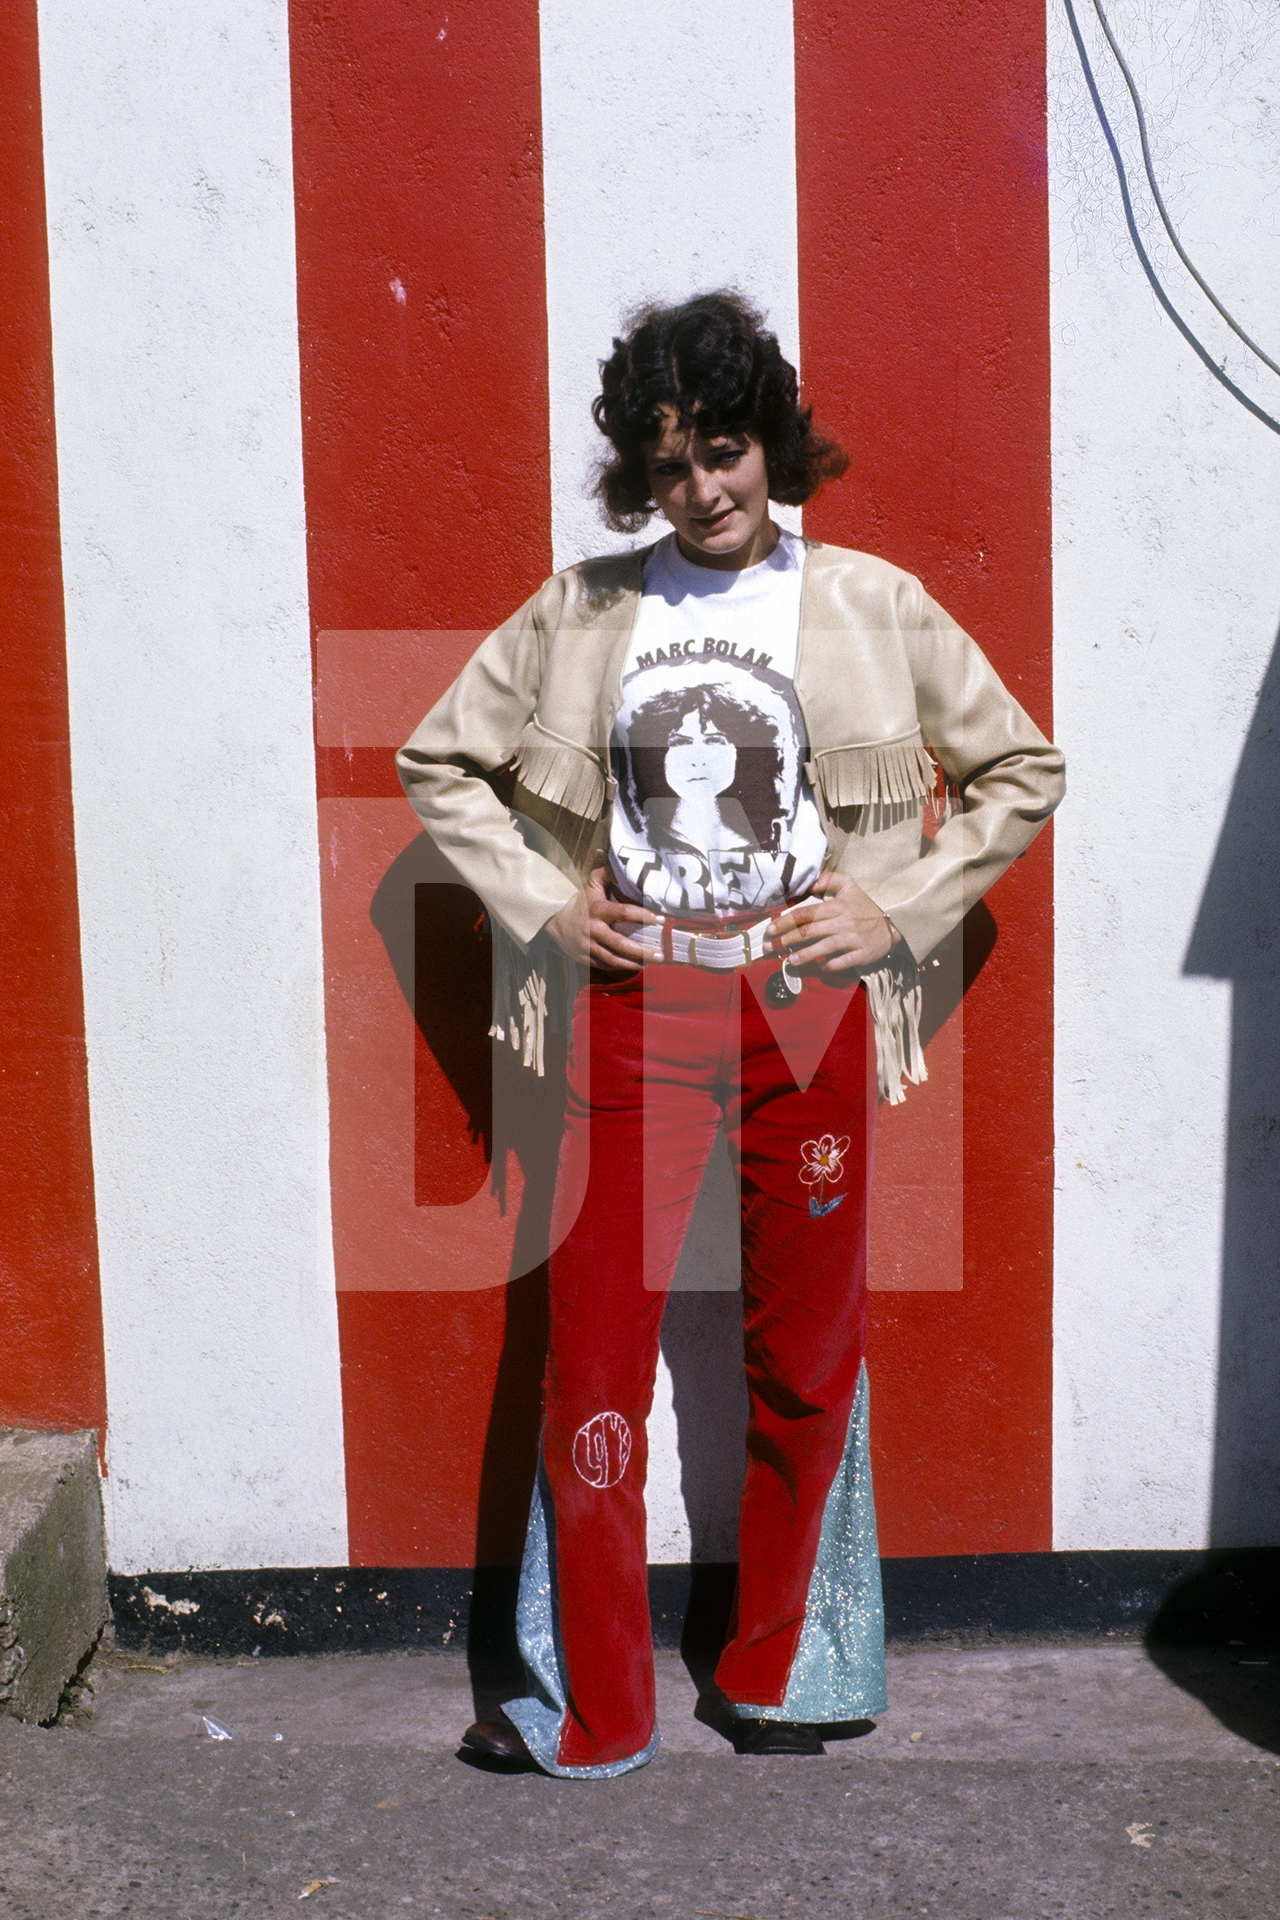 Marc Bolan fan. Butlin’s Filey, Yorkshire. 1972 by Daniel Meadows